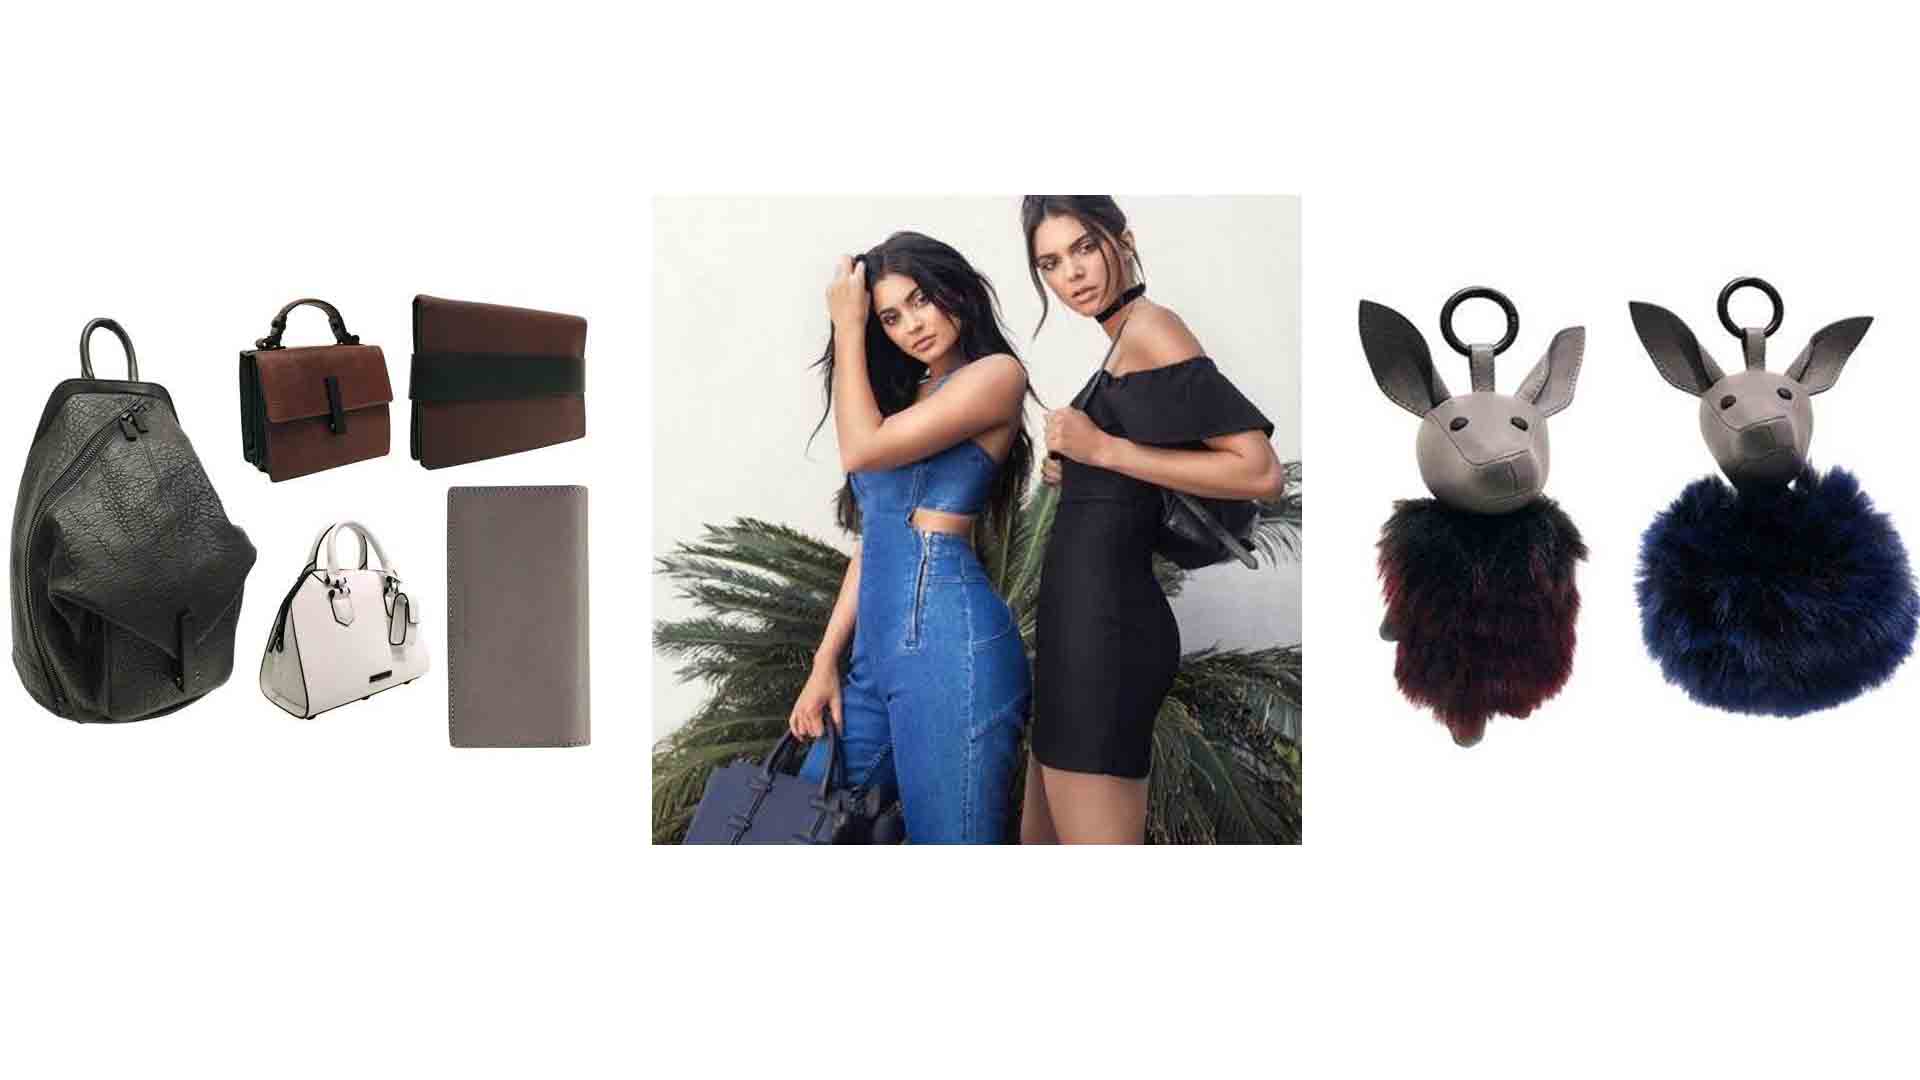 Kendall y Kylie Jenner presentaron una nueva colección de bolsos con diseños diferentes que se adaptan fácilmente a cada estilo